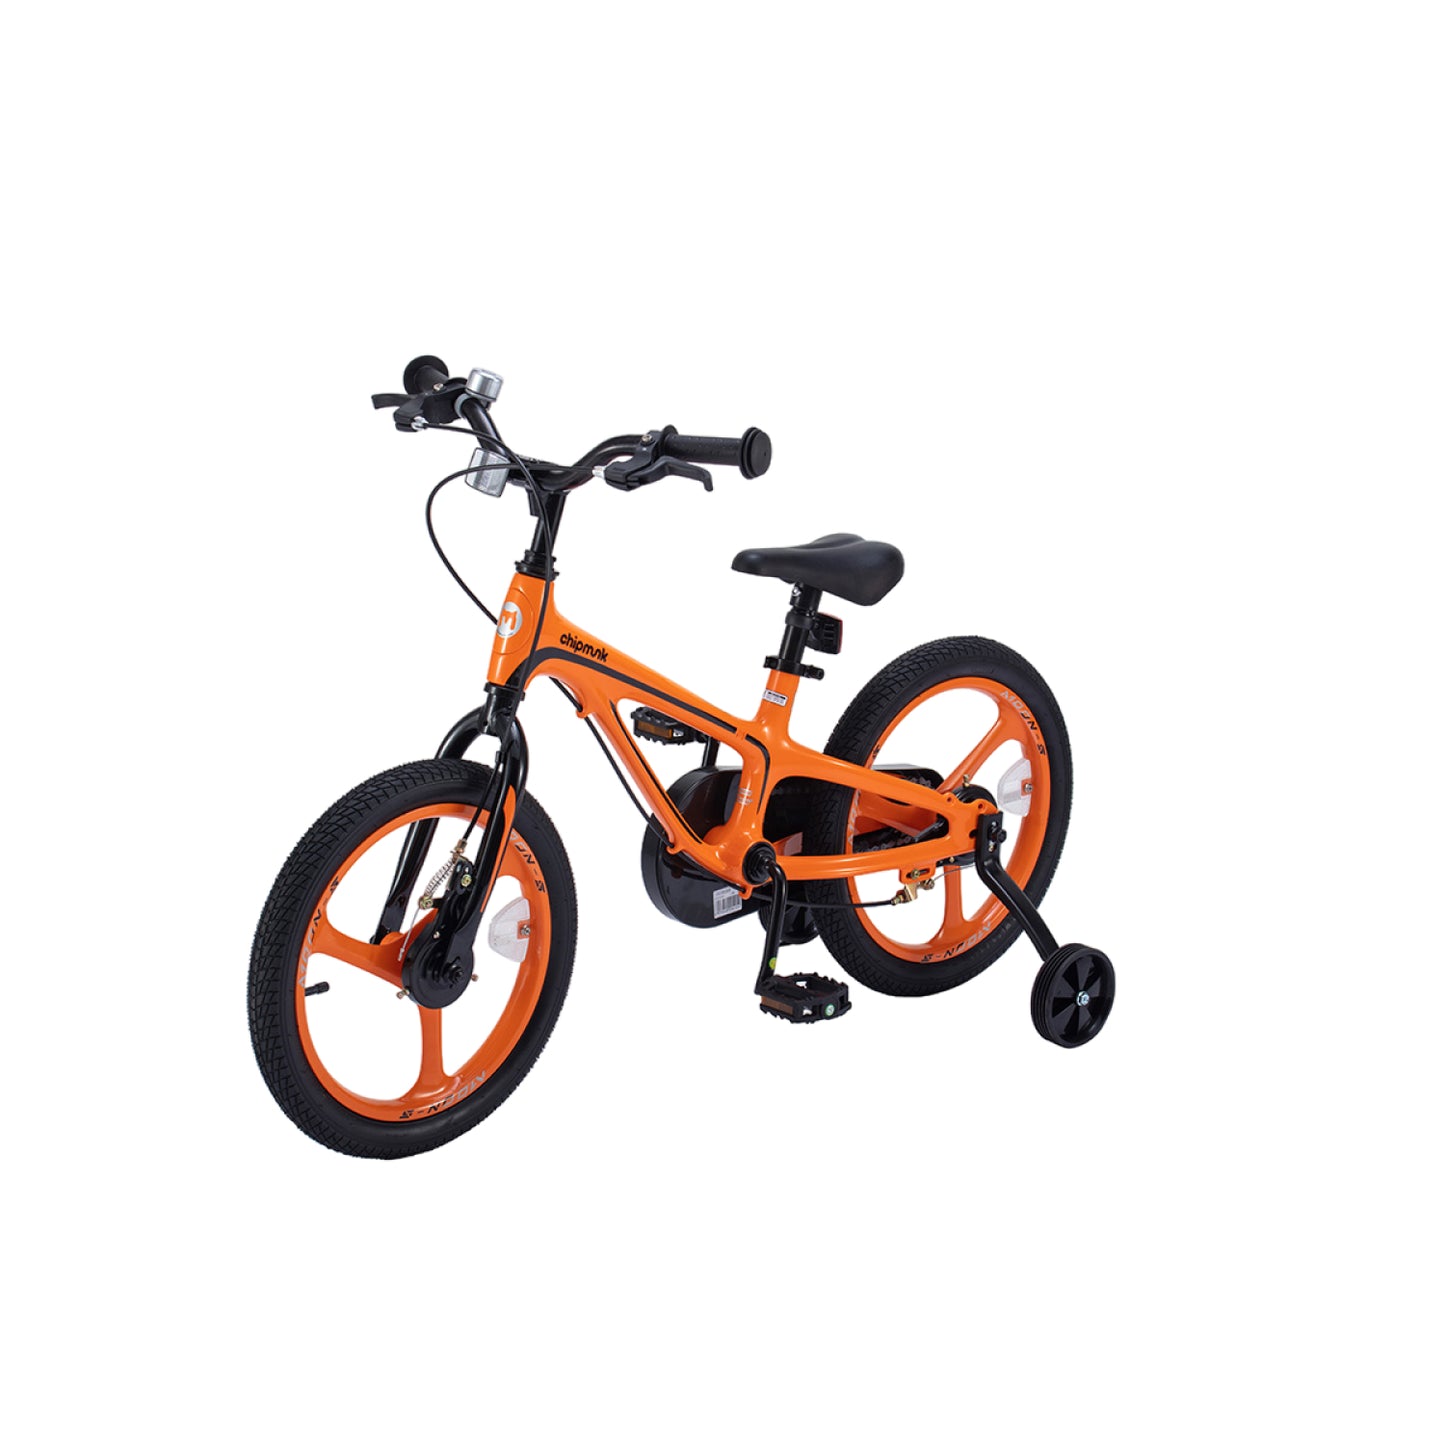 Chipmunk Moon 14 inch orange children's bicycle CM14-5P-OR